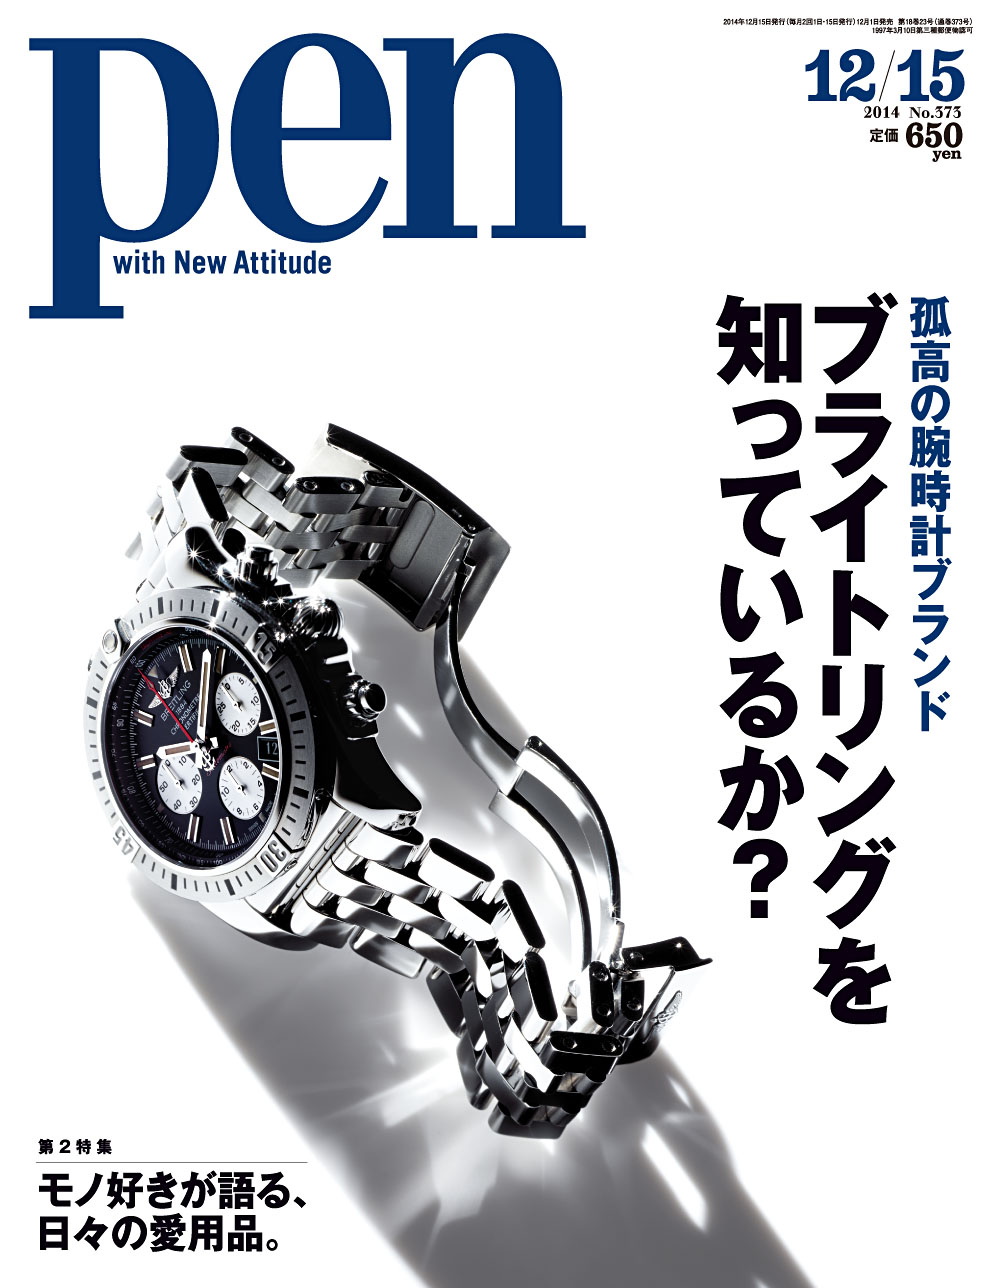 クロノグラフの腕時計が欲しいと思った時、最初に思い浮かべるべきは、このブランドだ。Pen 2014年12/15号「ブライトリングを知っているか